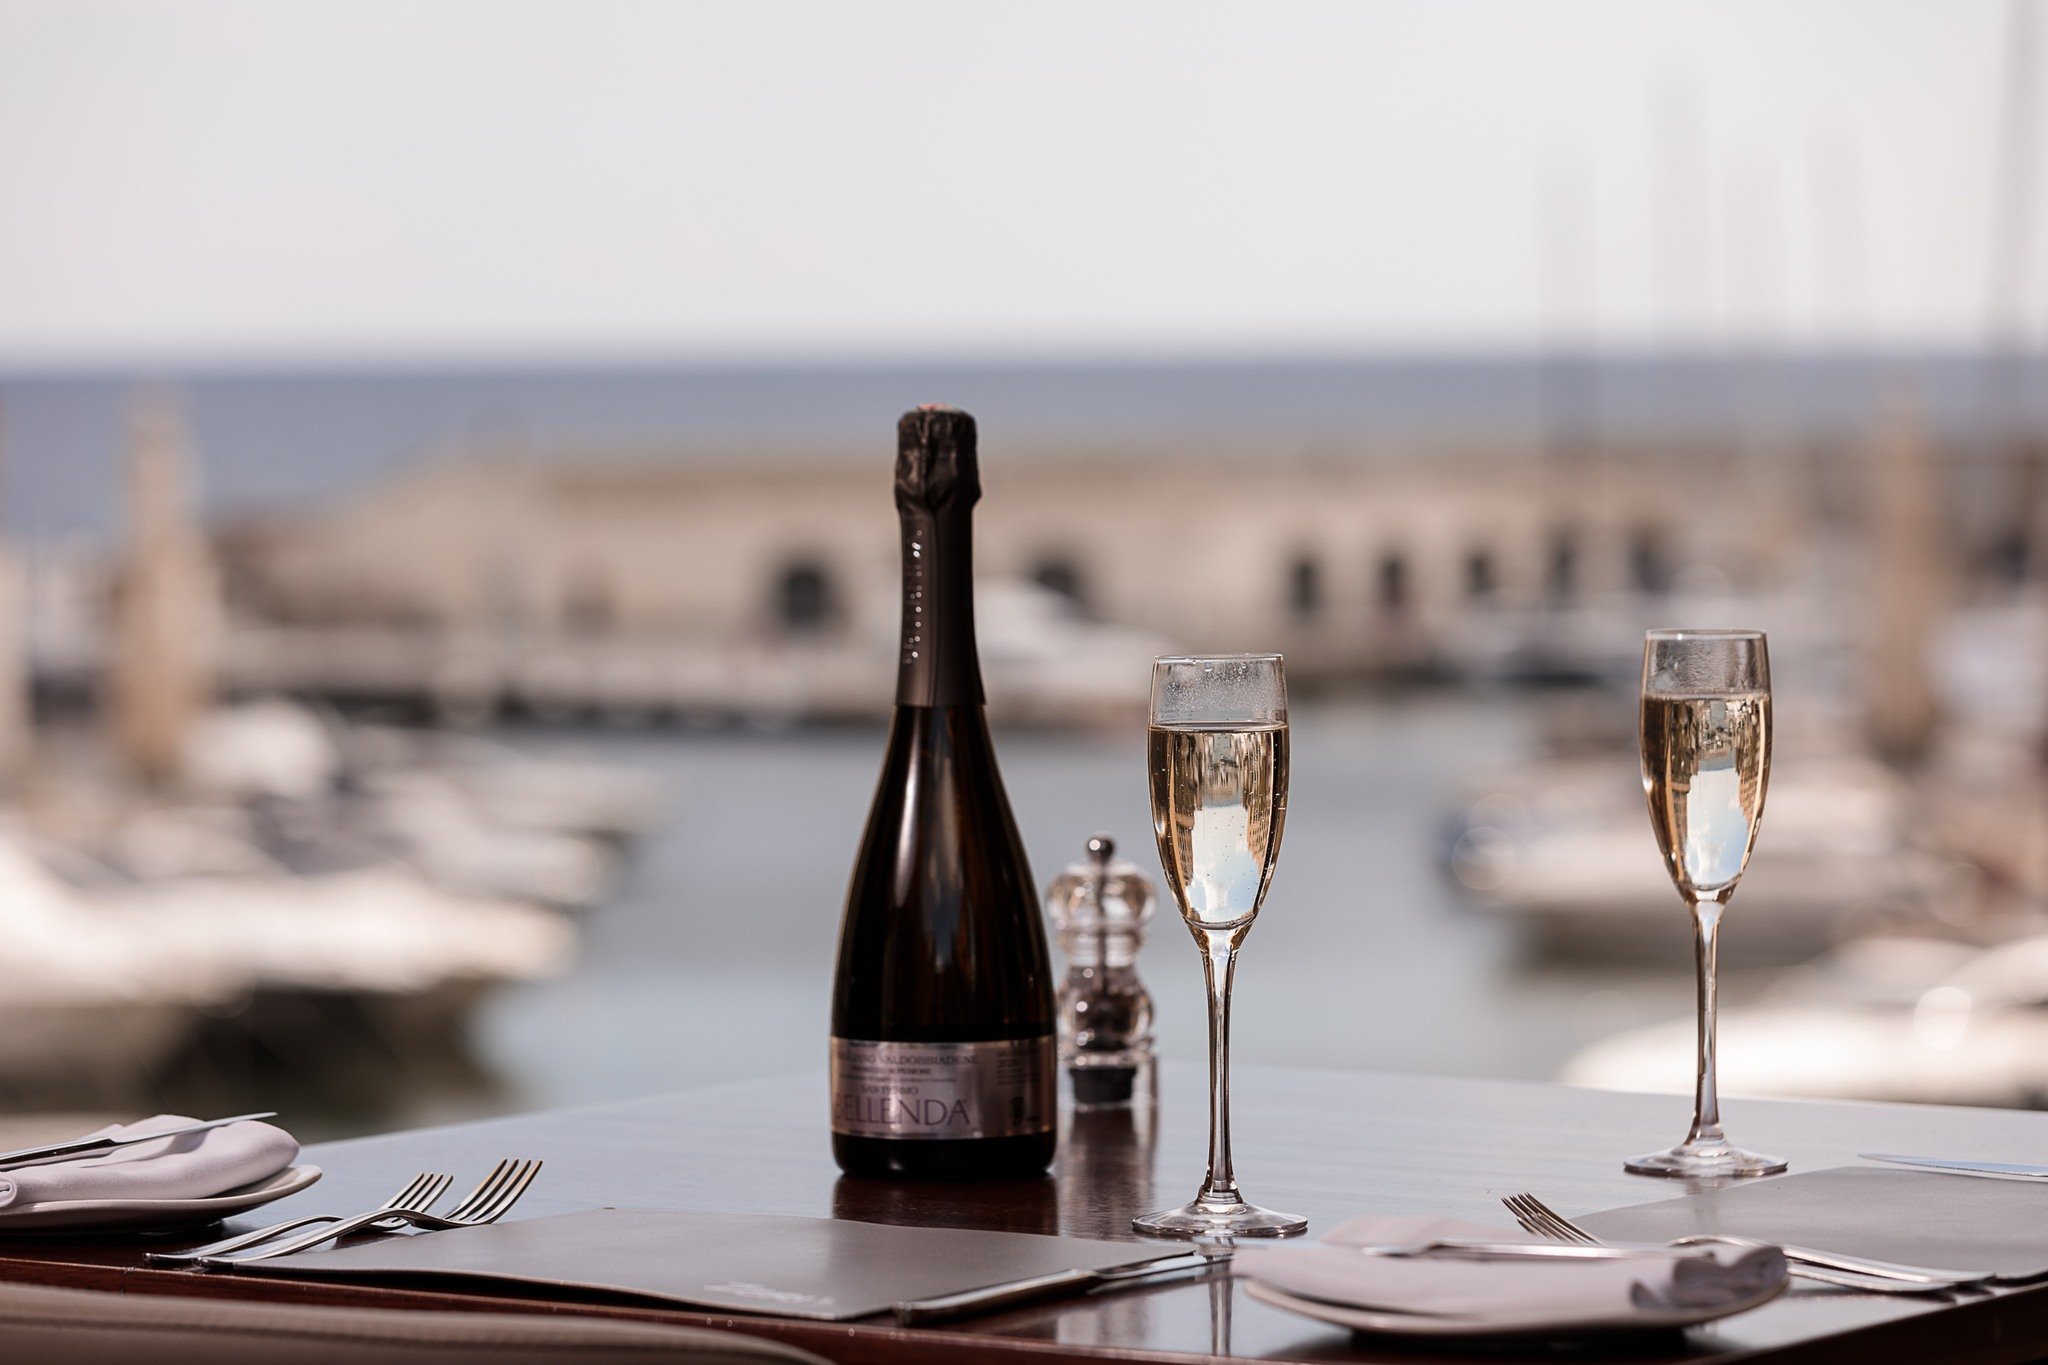 Zeris Restaurant - Malta restaurants with a view